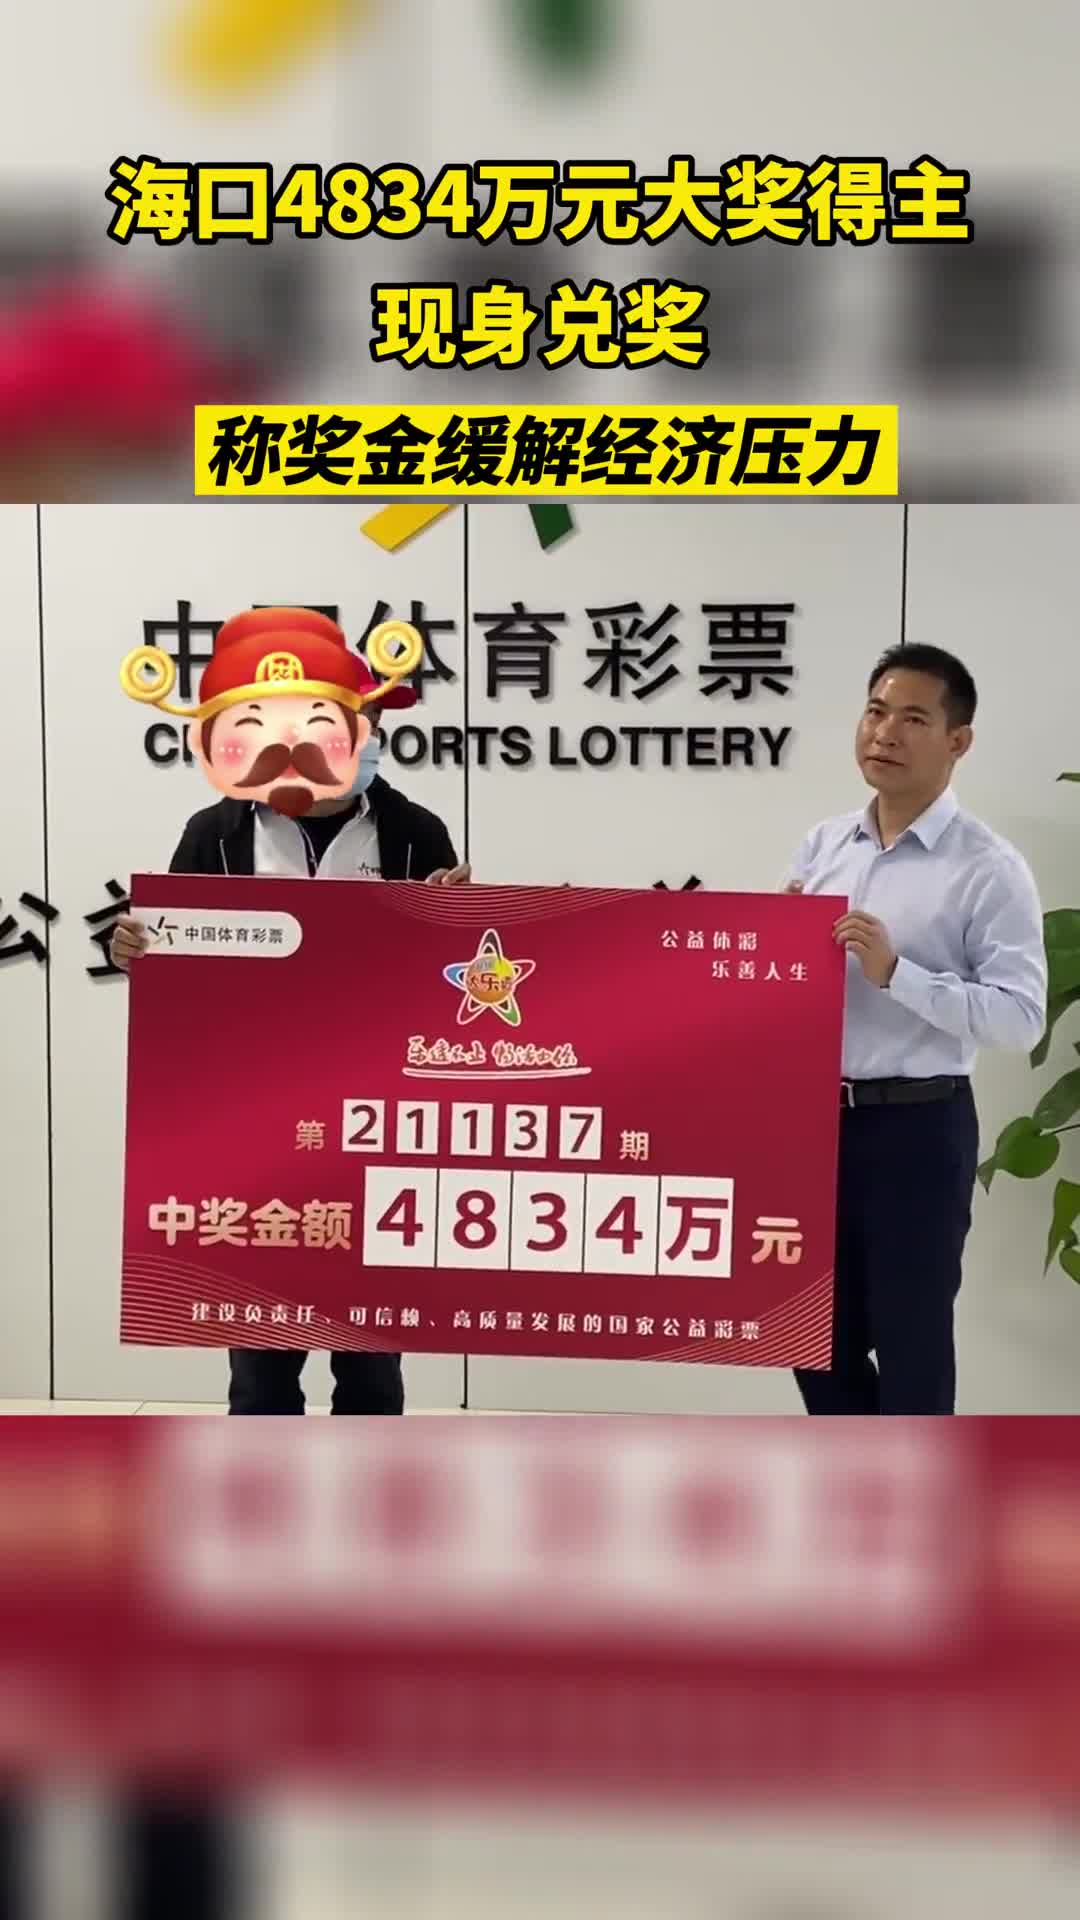 襄阳彩民喜中双色球大奖500万元|湖北福彩官方网站